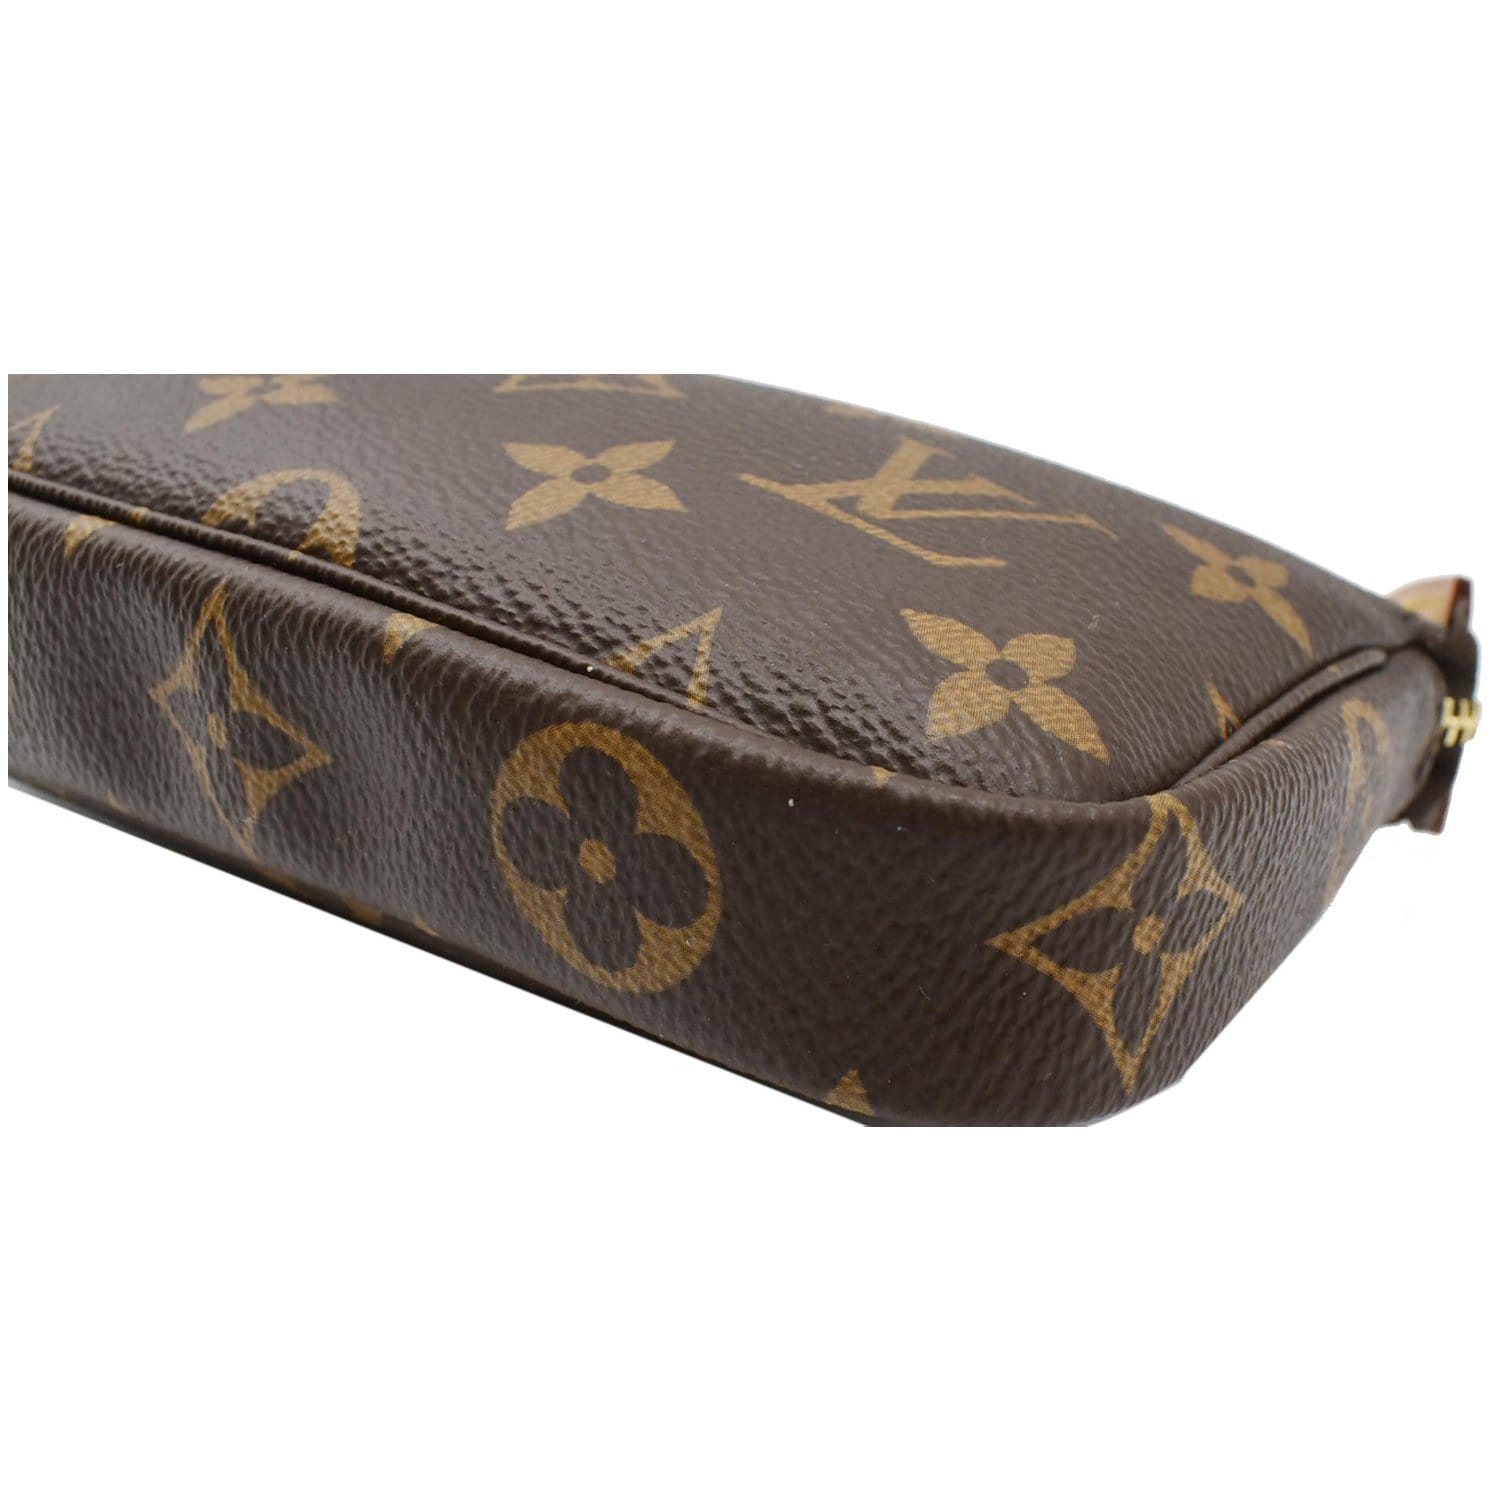 Louis Vuitton Mini Pochette Accessoires - Brown Mini Bags